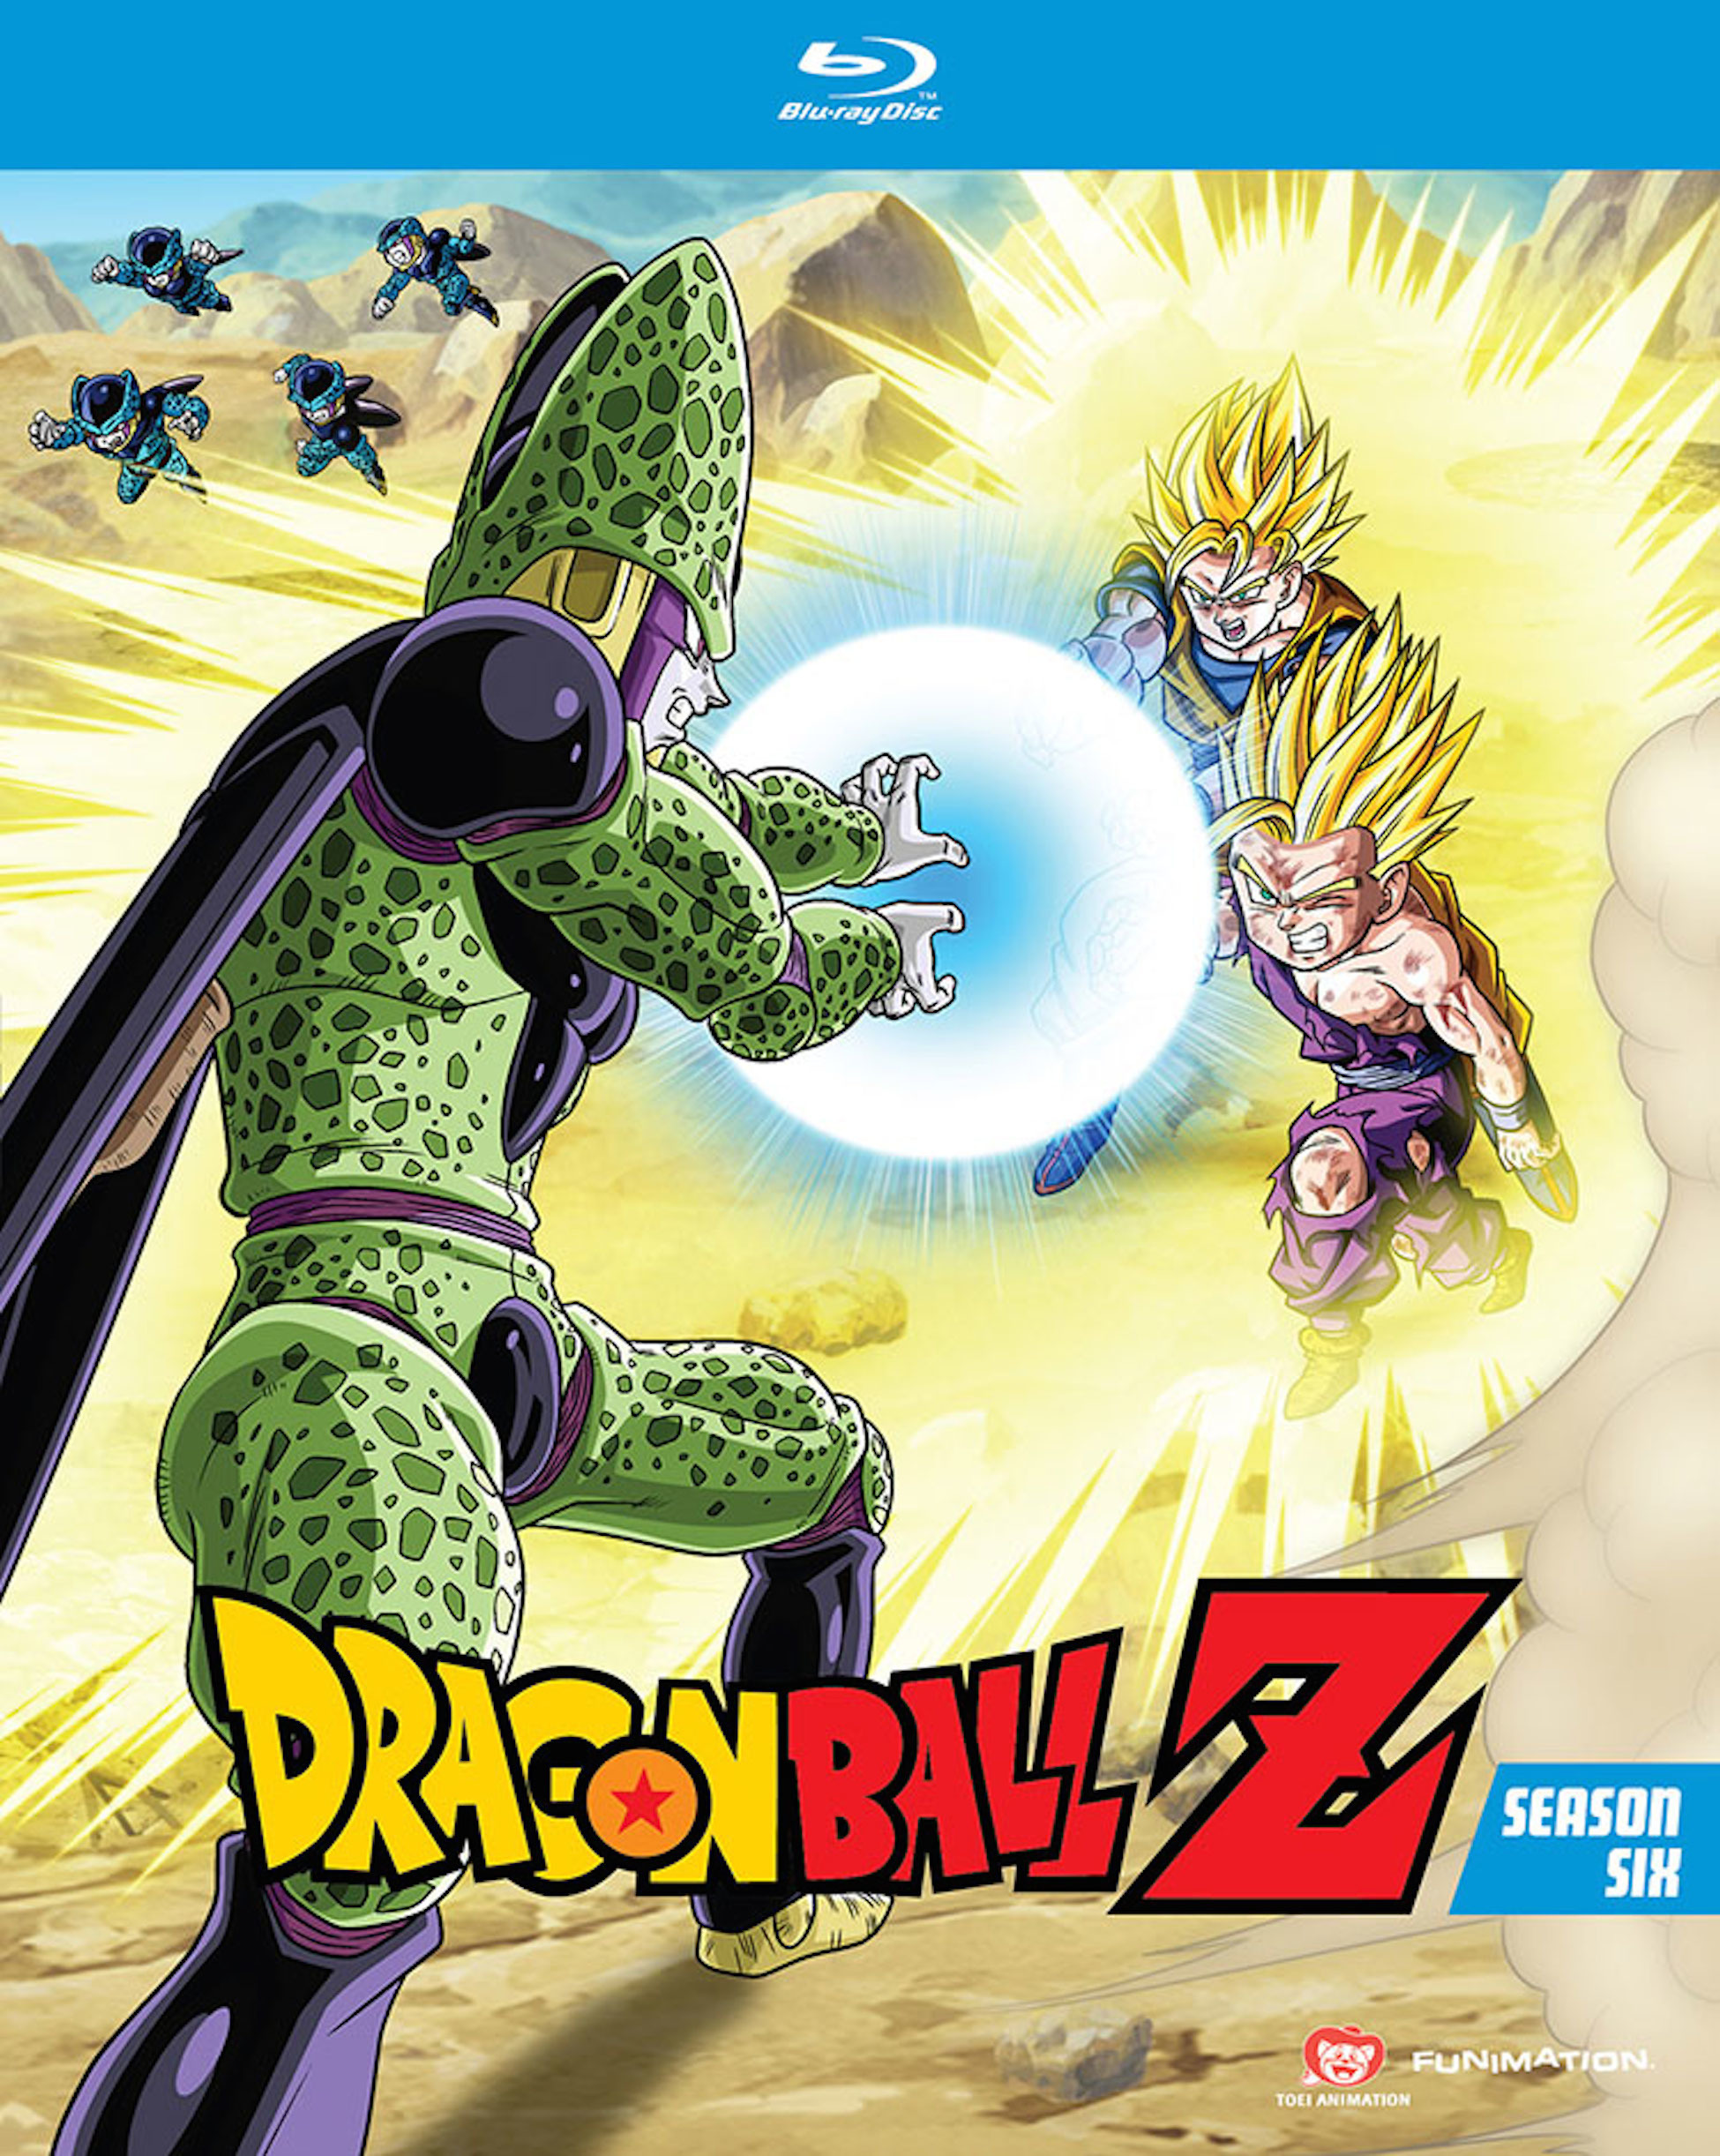 Dragon Ball Z Kai Cell Saga (New Episodes) Starts 5th August Every